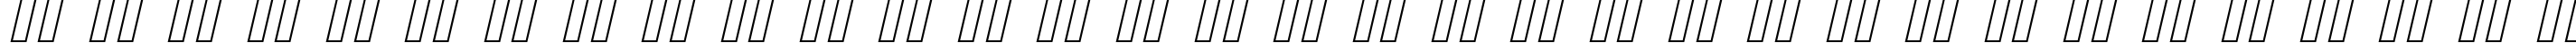 Пример написания русского алфавита шрифтом Cursive Serif